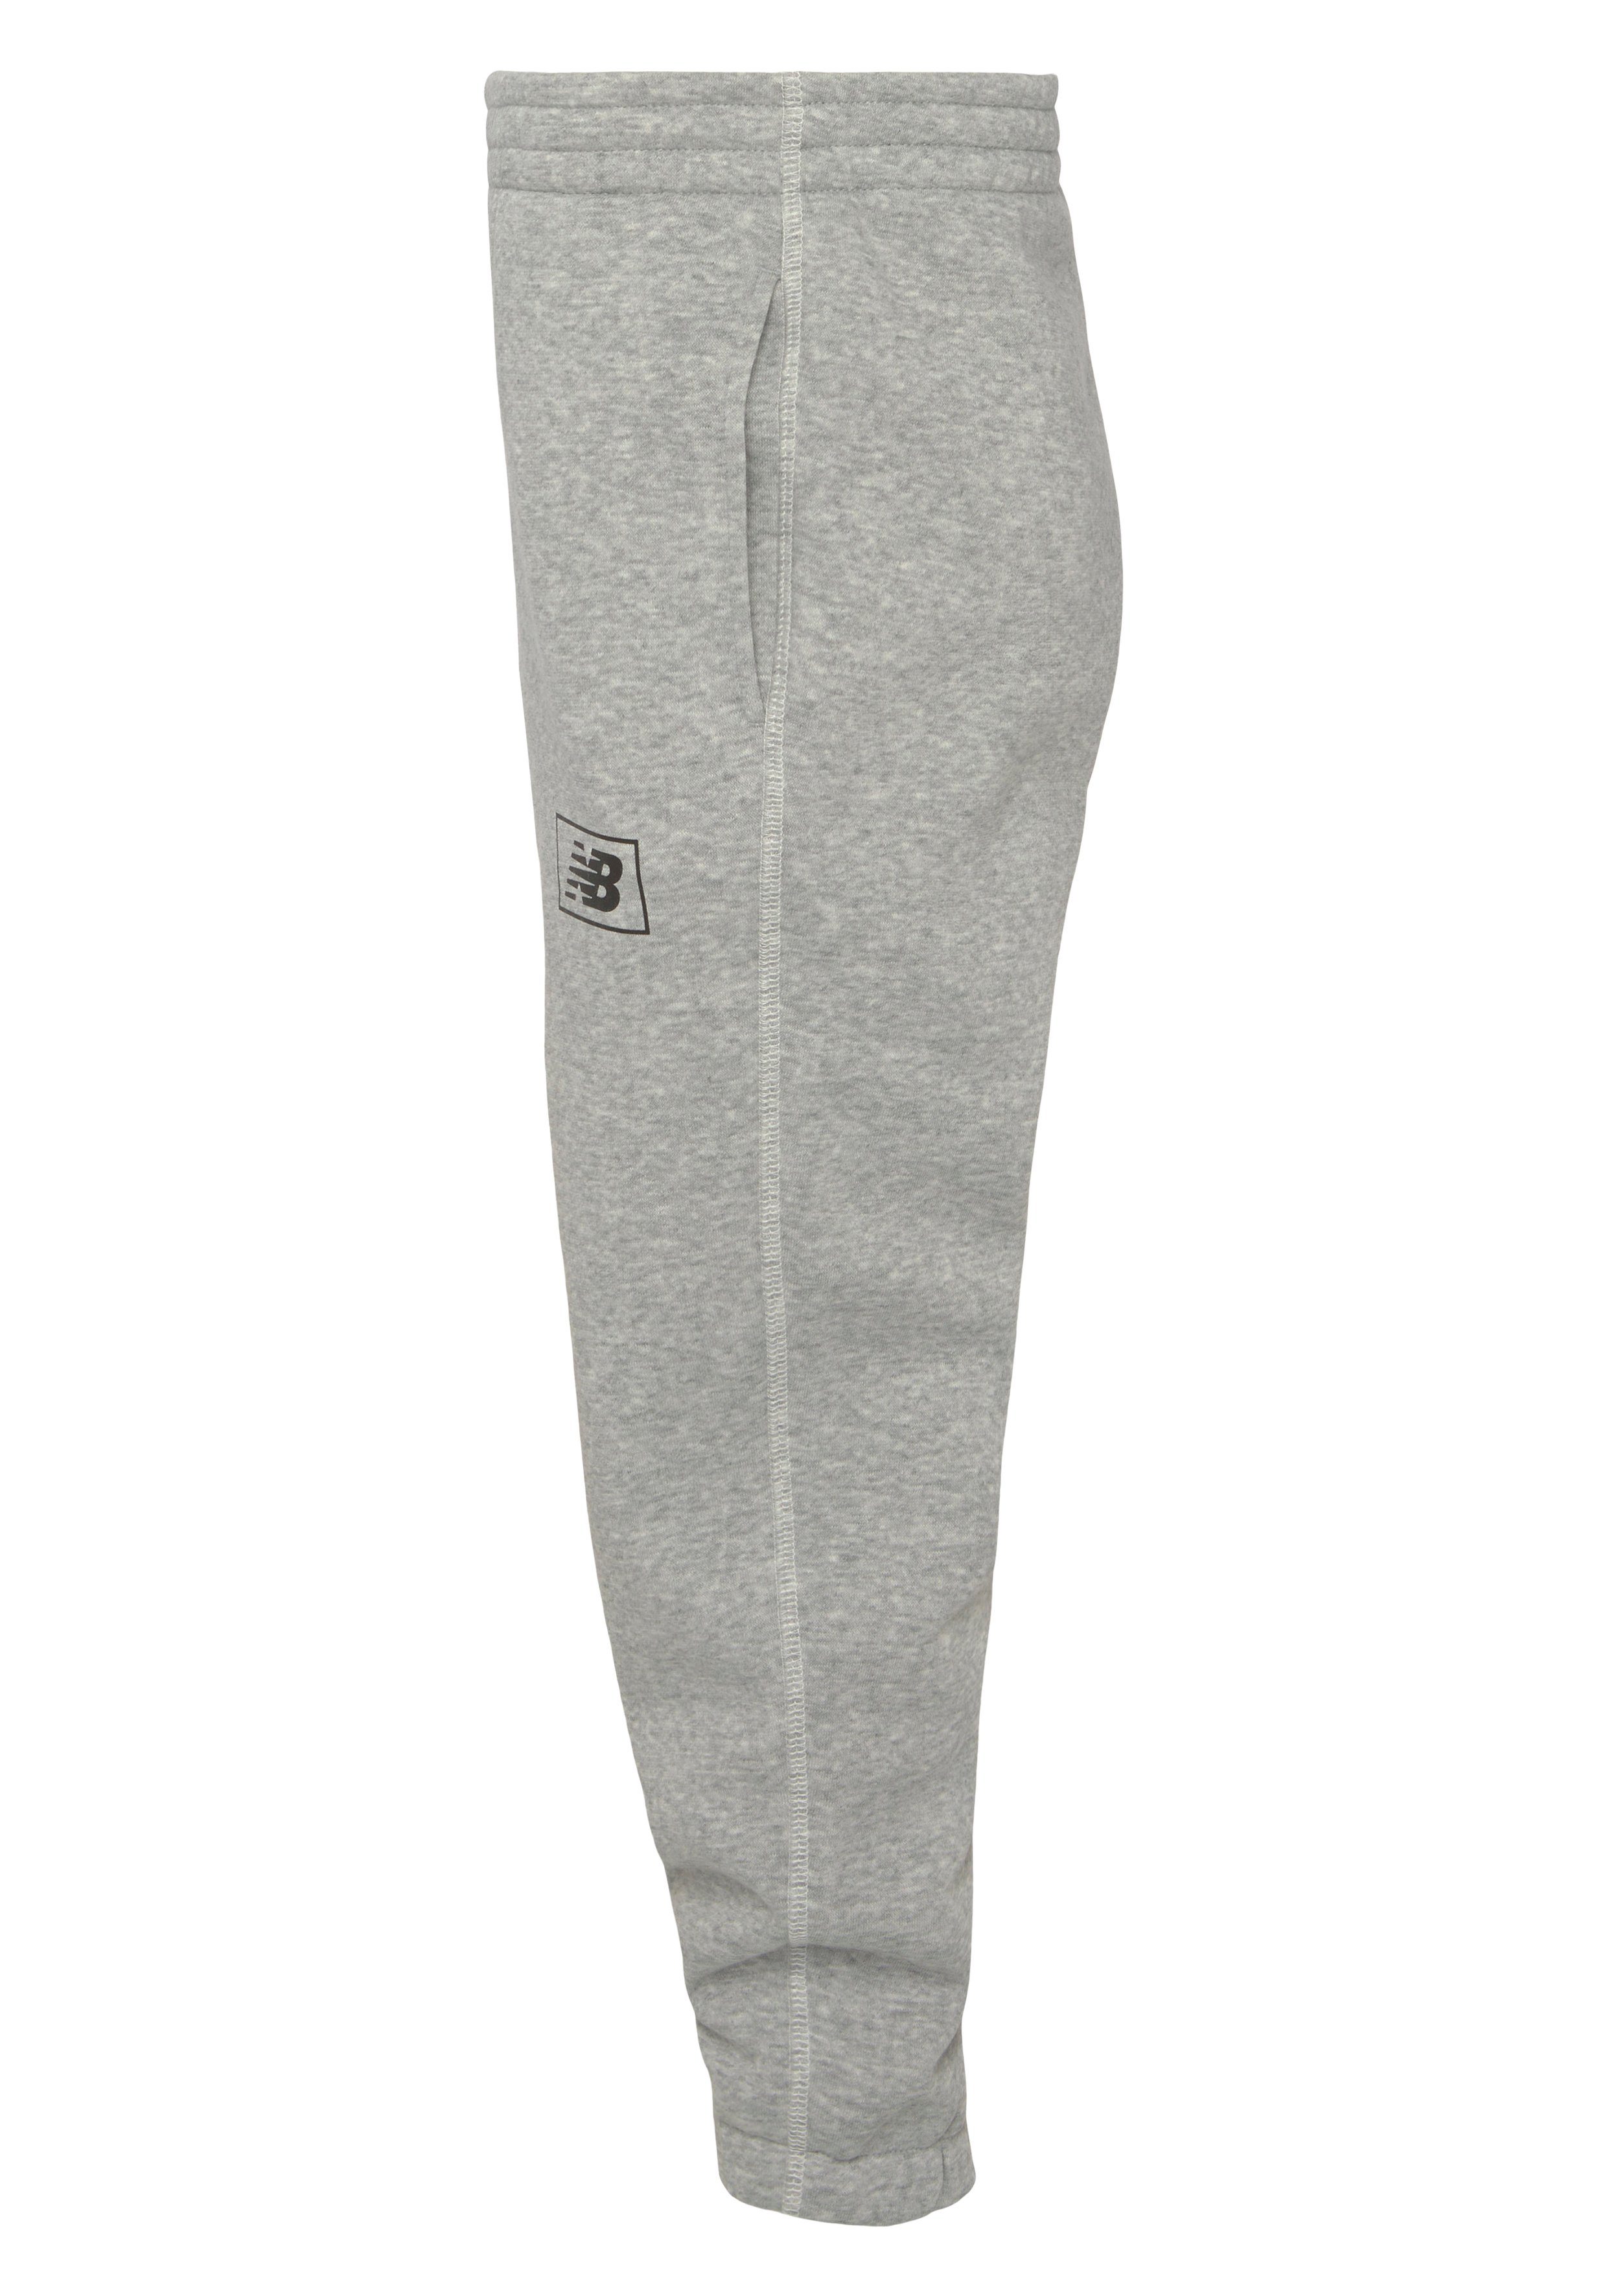 New Balance Sweathose Essentials athletic Back grey Pant Brushed